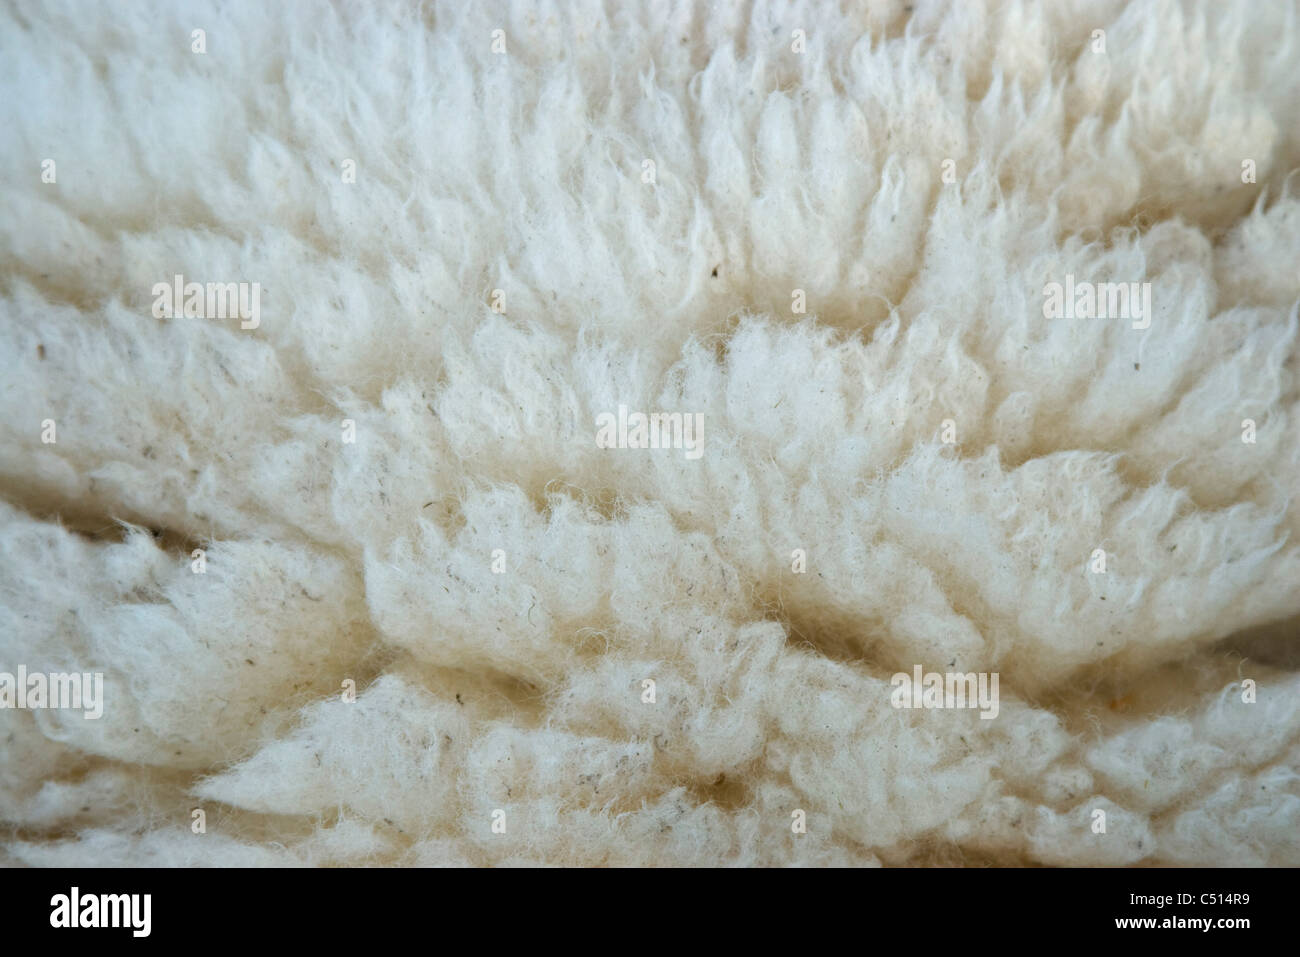 La laine des moutons, close-up Banque D'Images